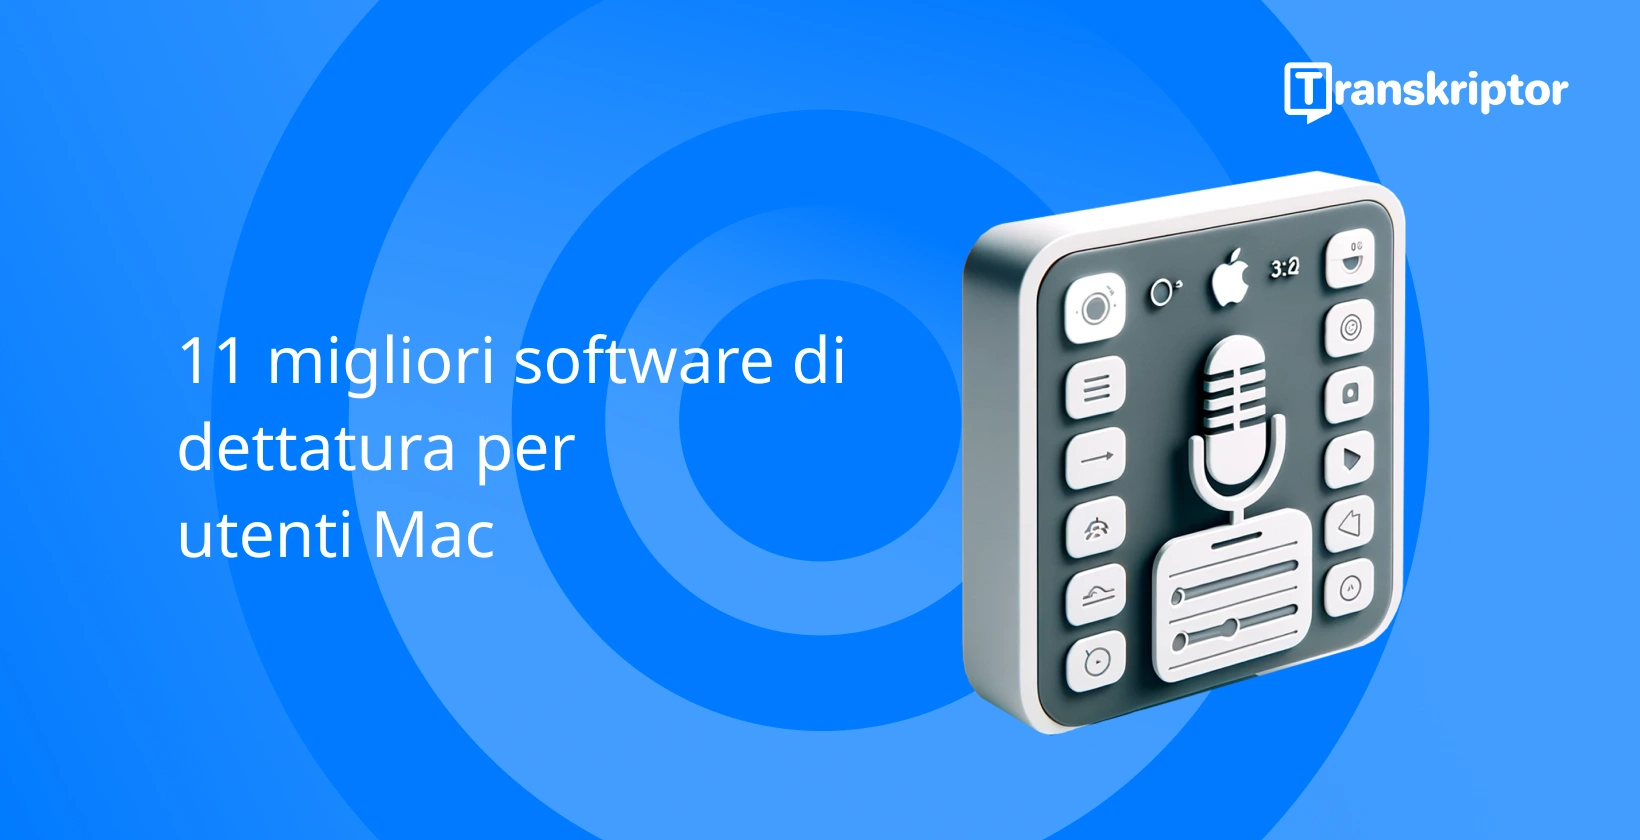 Il miglior software di dettatura per Mac con microfono e logo Apple, che indica la compatibilità.